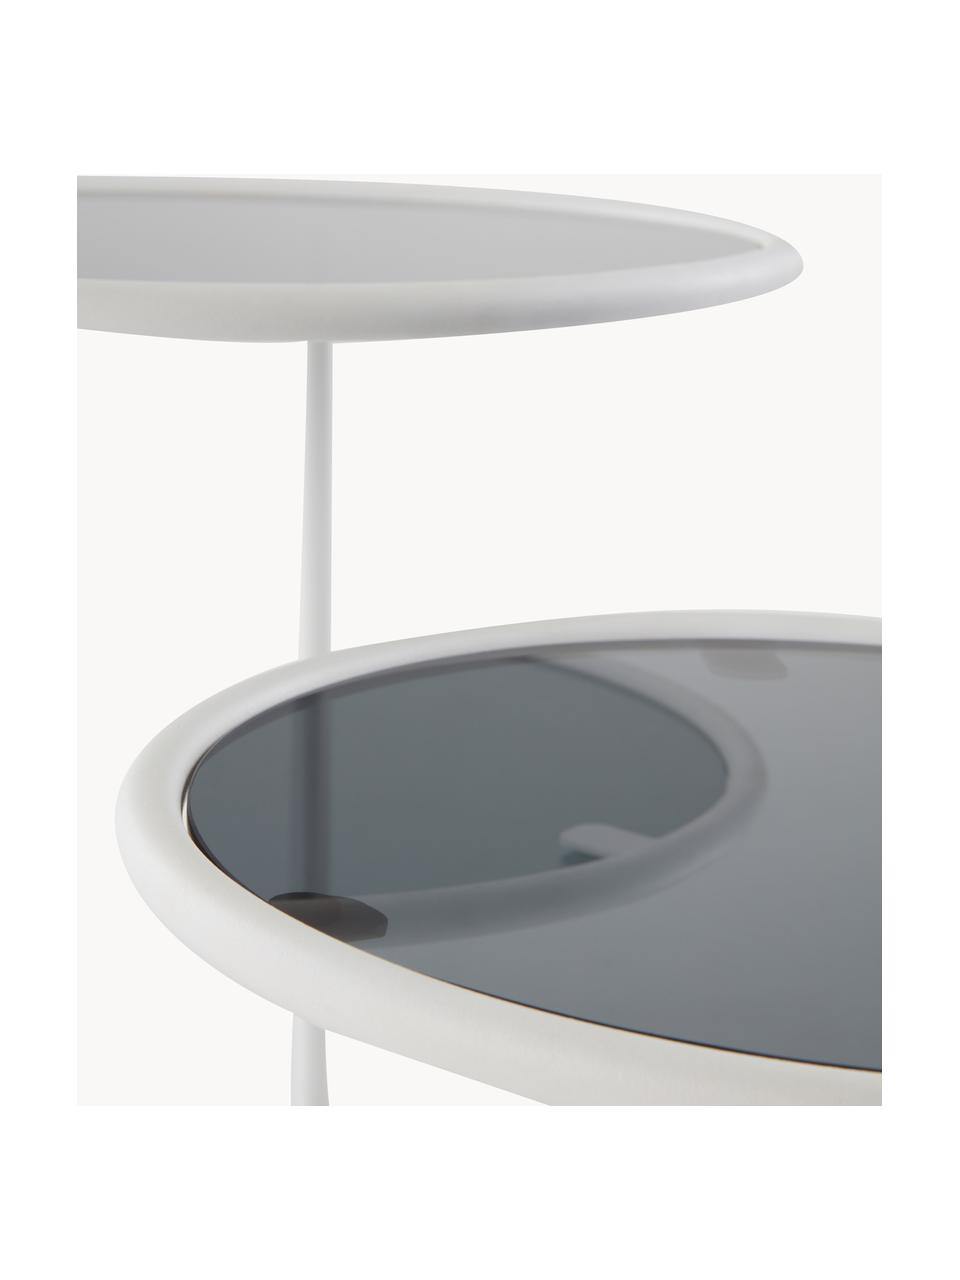 Beistelltisch Kallo mit zwei Tischplatten, Gestell: Eisen, pulverbeschichtet, Weiss, Grau, transparent, B 81 x H 50 cm